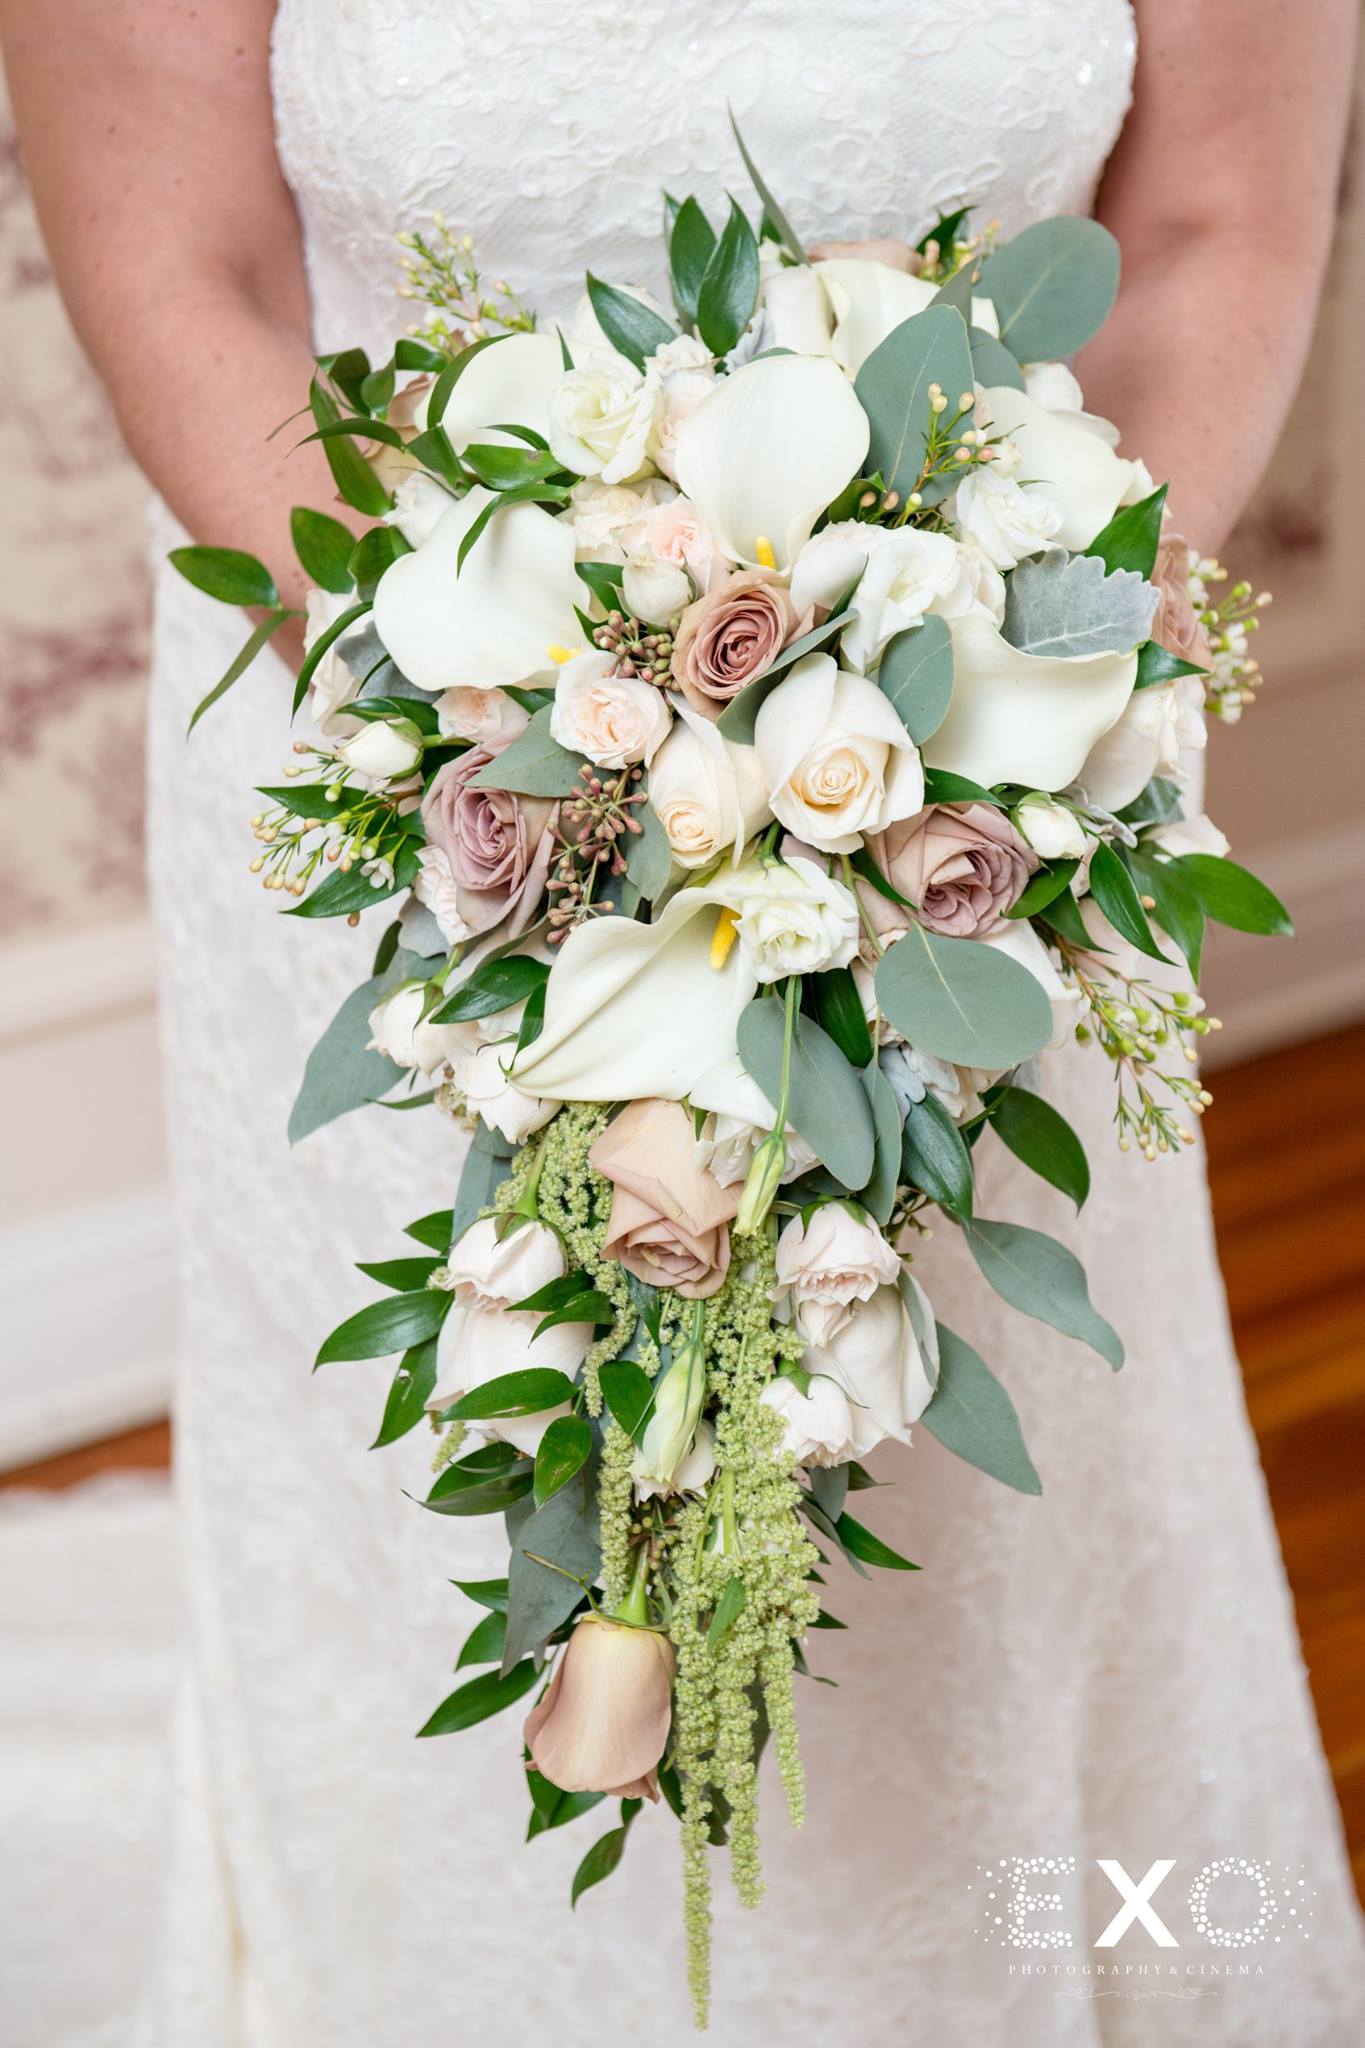 brides floral bouquet by Pedestals